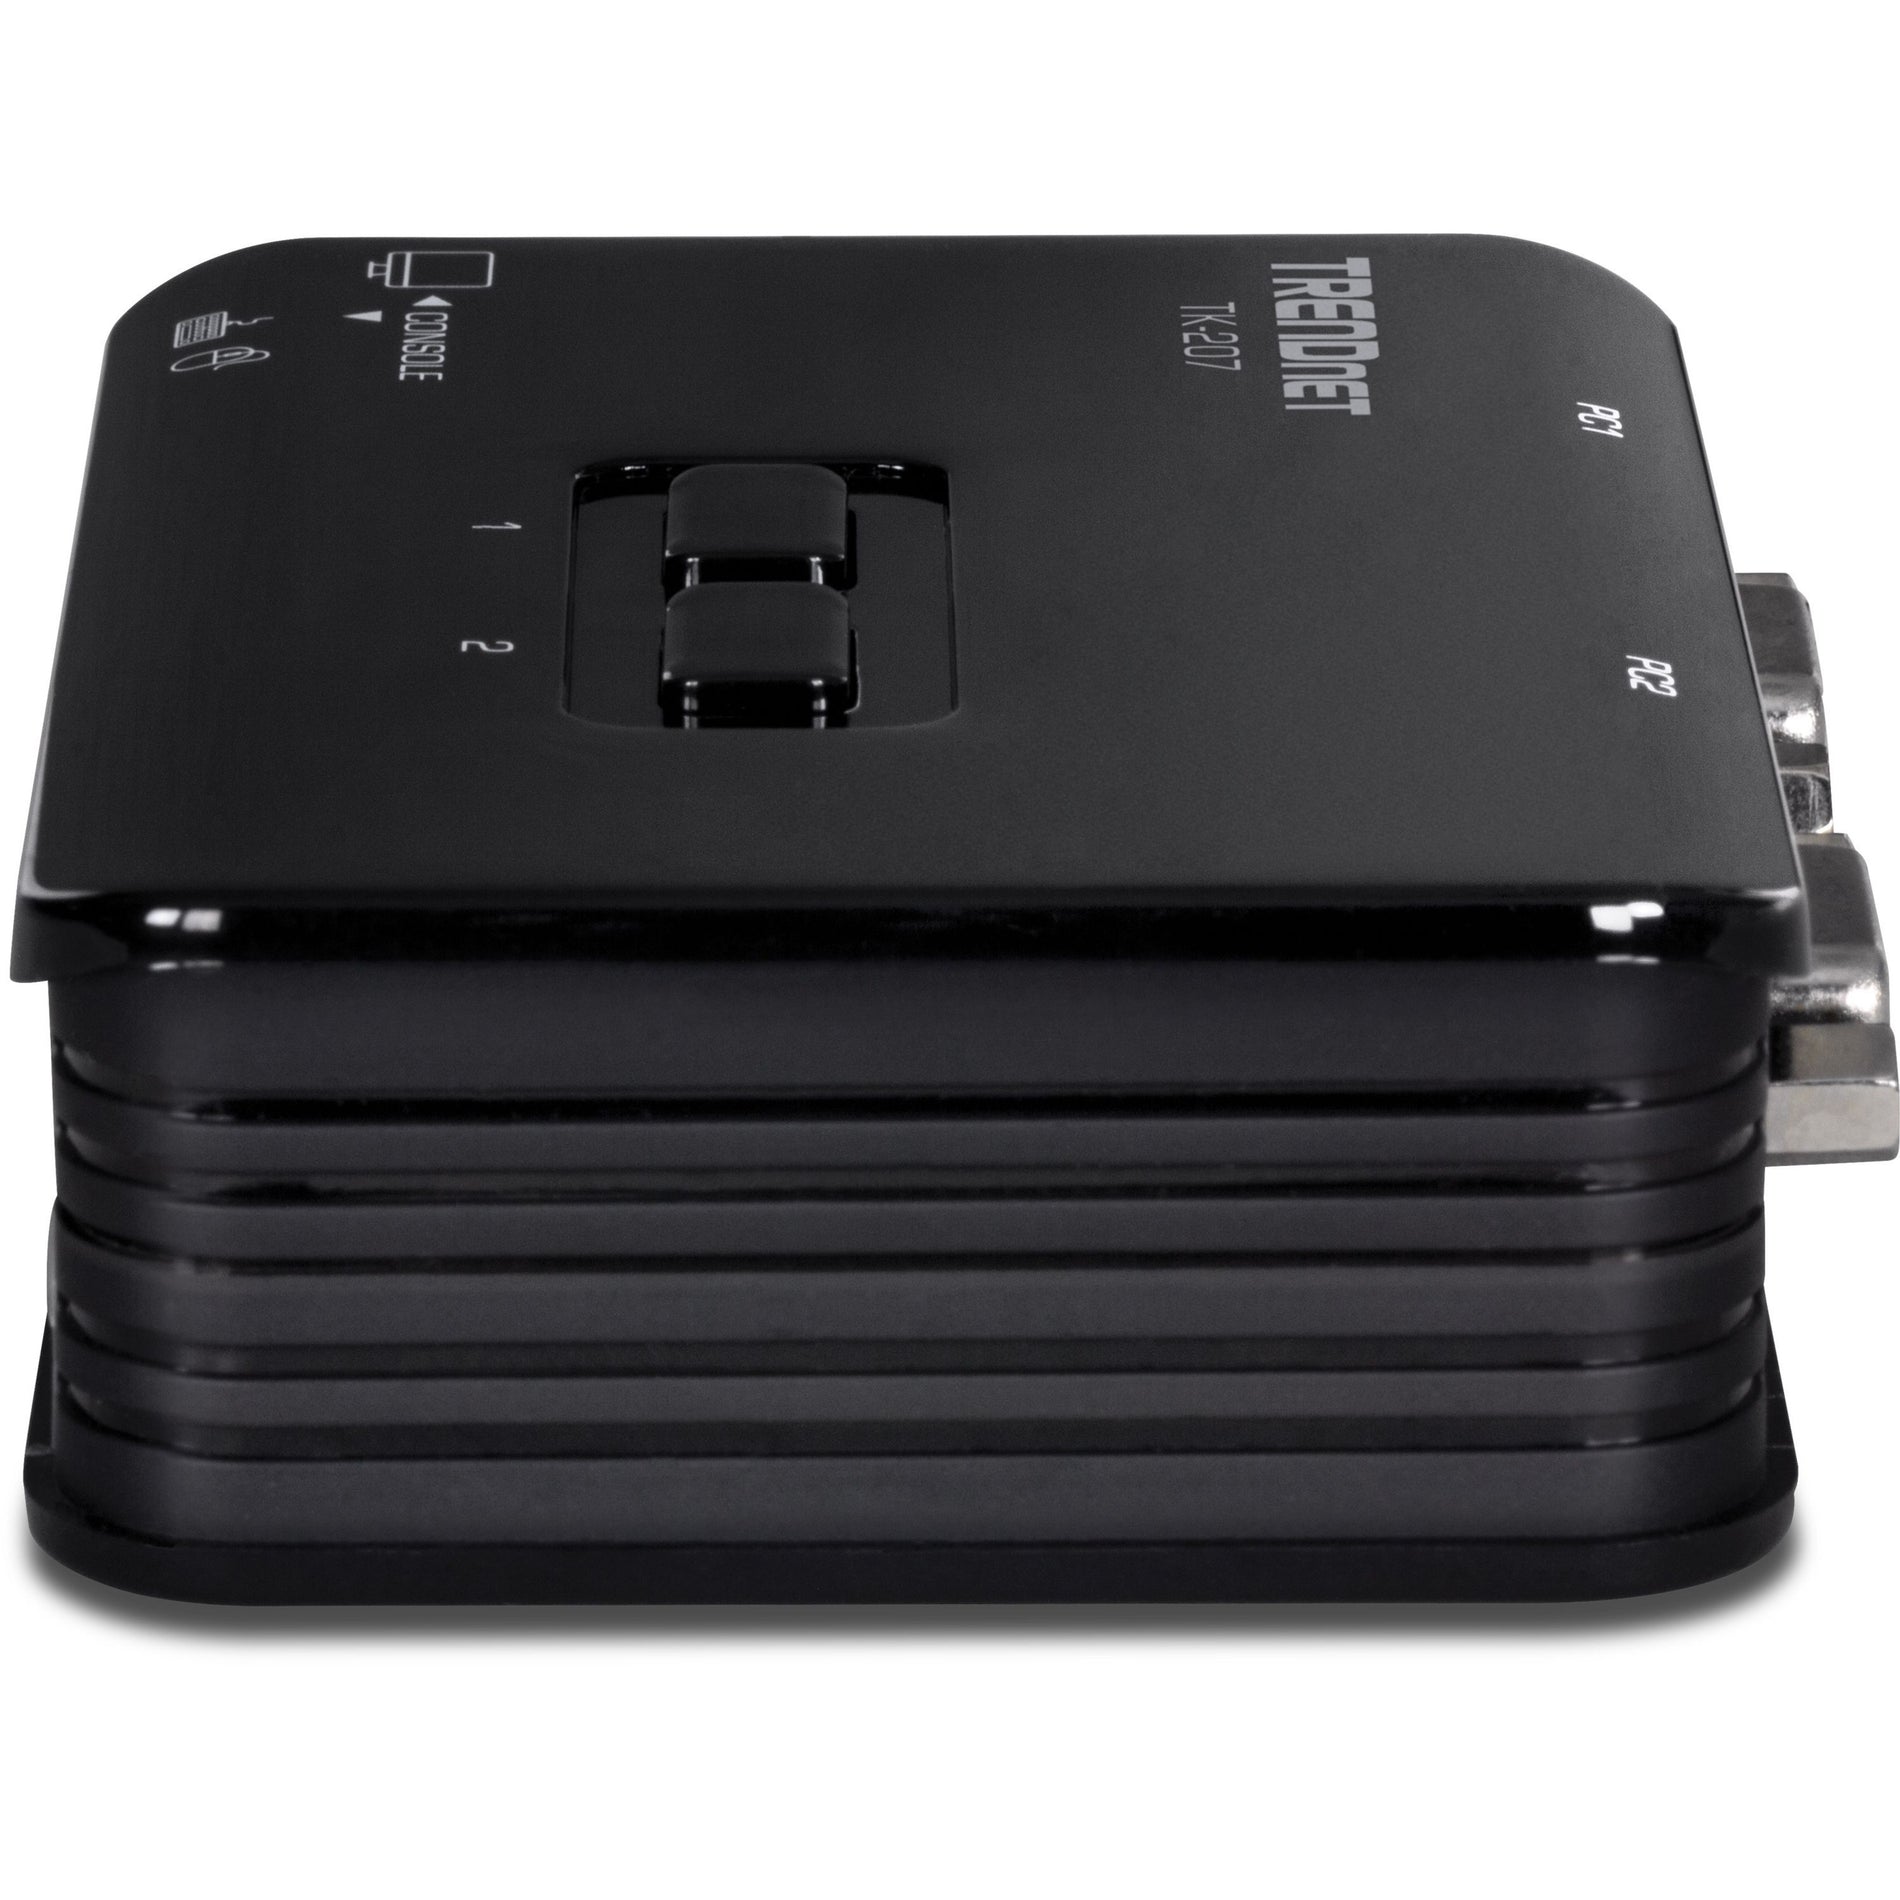 TRENDnet TK-207K 2-Port USB KVM Switch Kit, VGA/SVGA, 2048 x 1536, 2 Year Warranty, NDAA Compliant